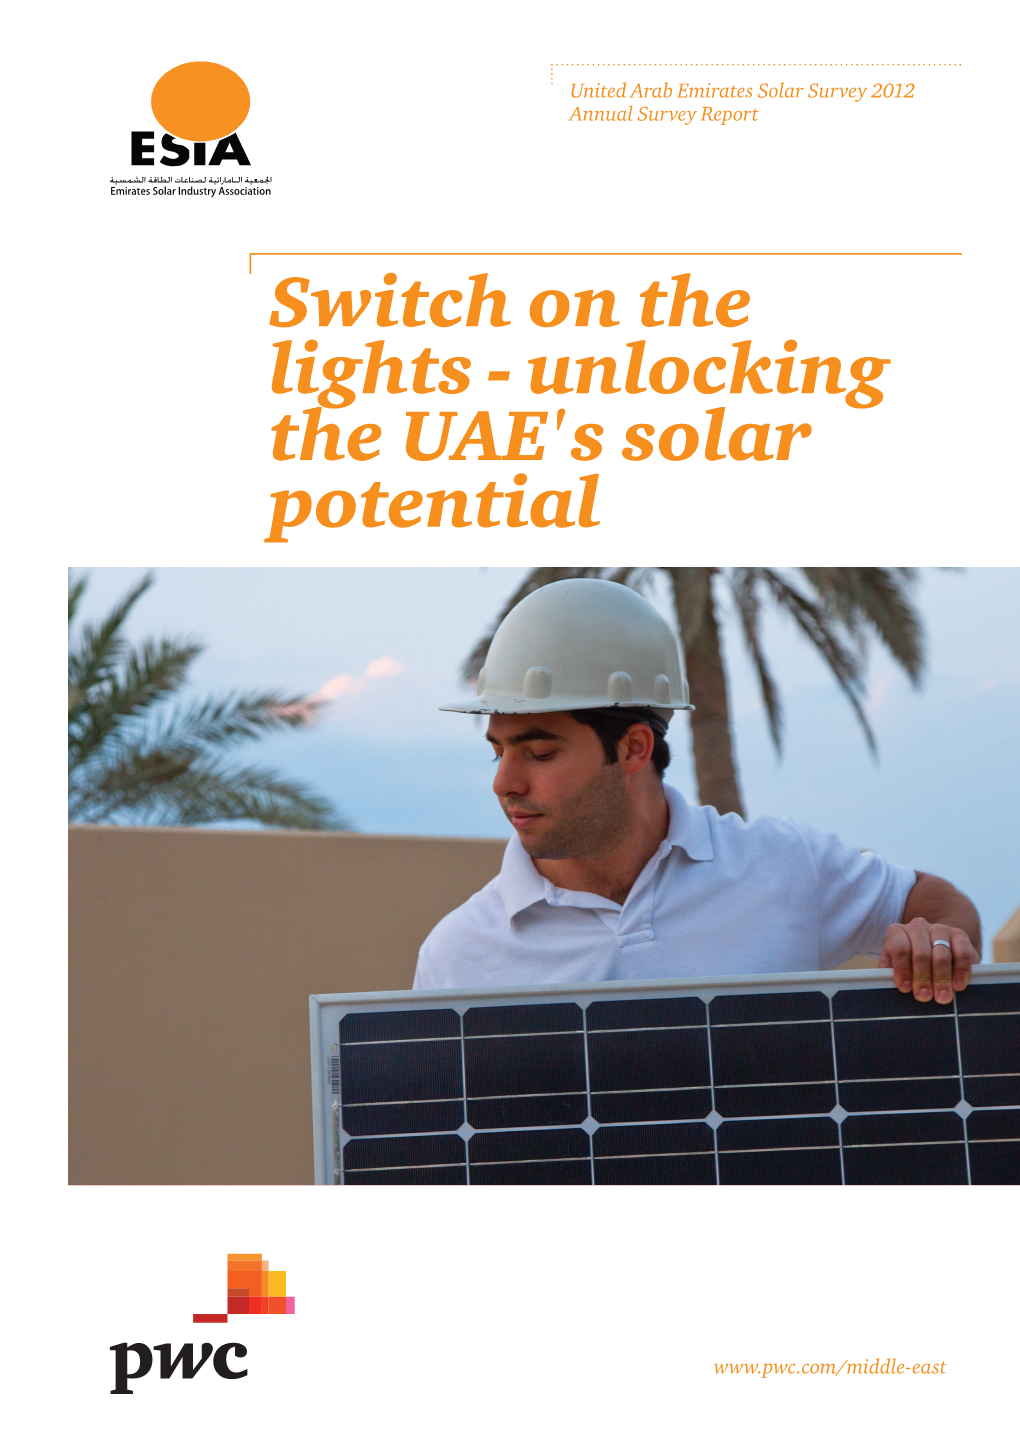 Unlocking the UAE's Solar Potential